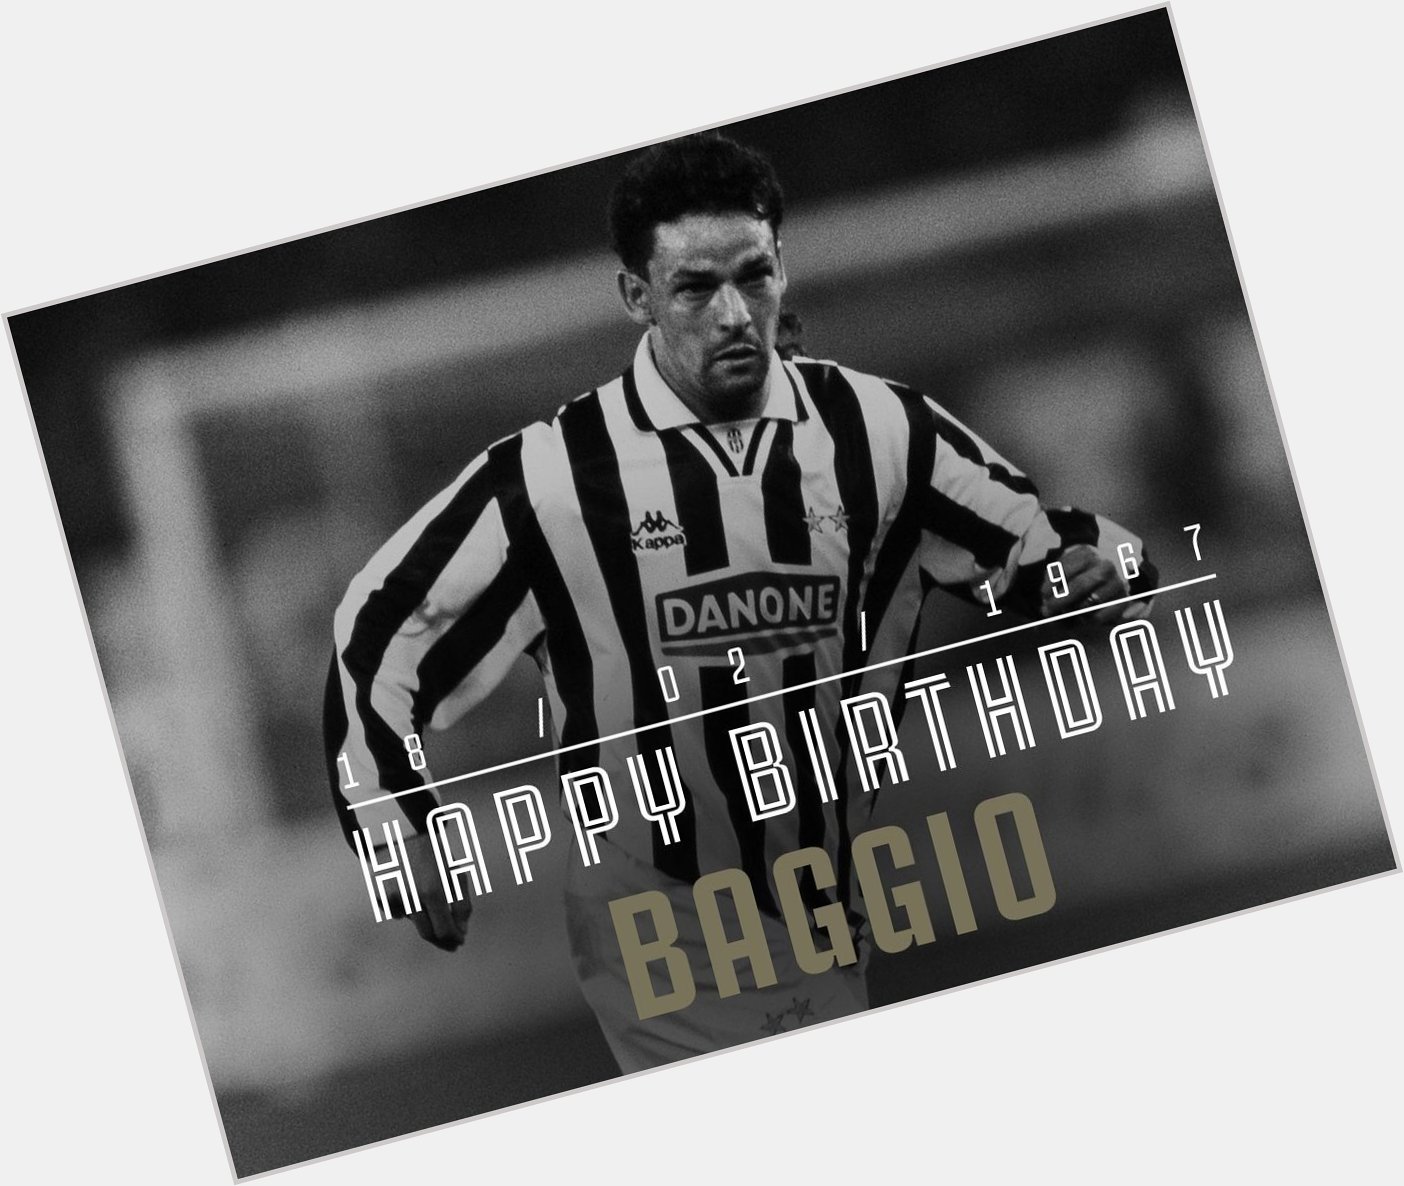 Happy Birthday Roberto Baggio! 